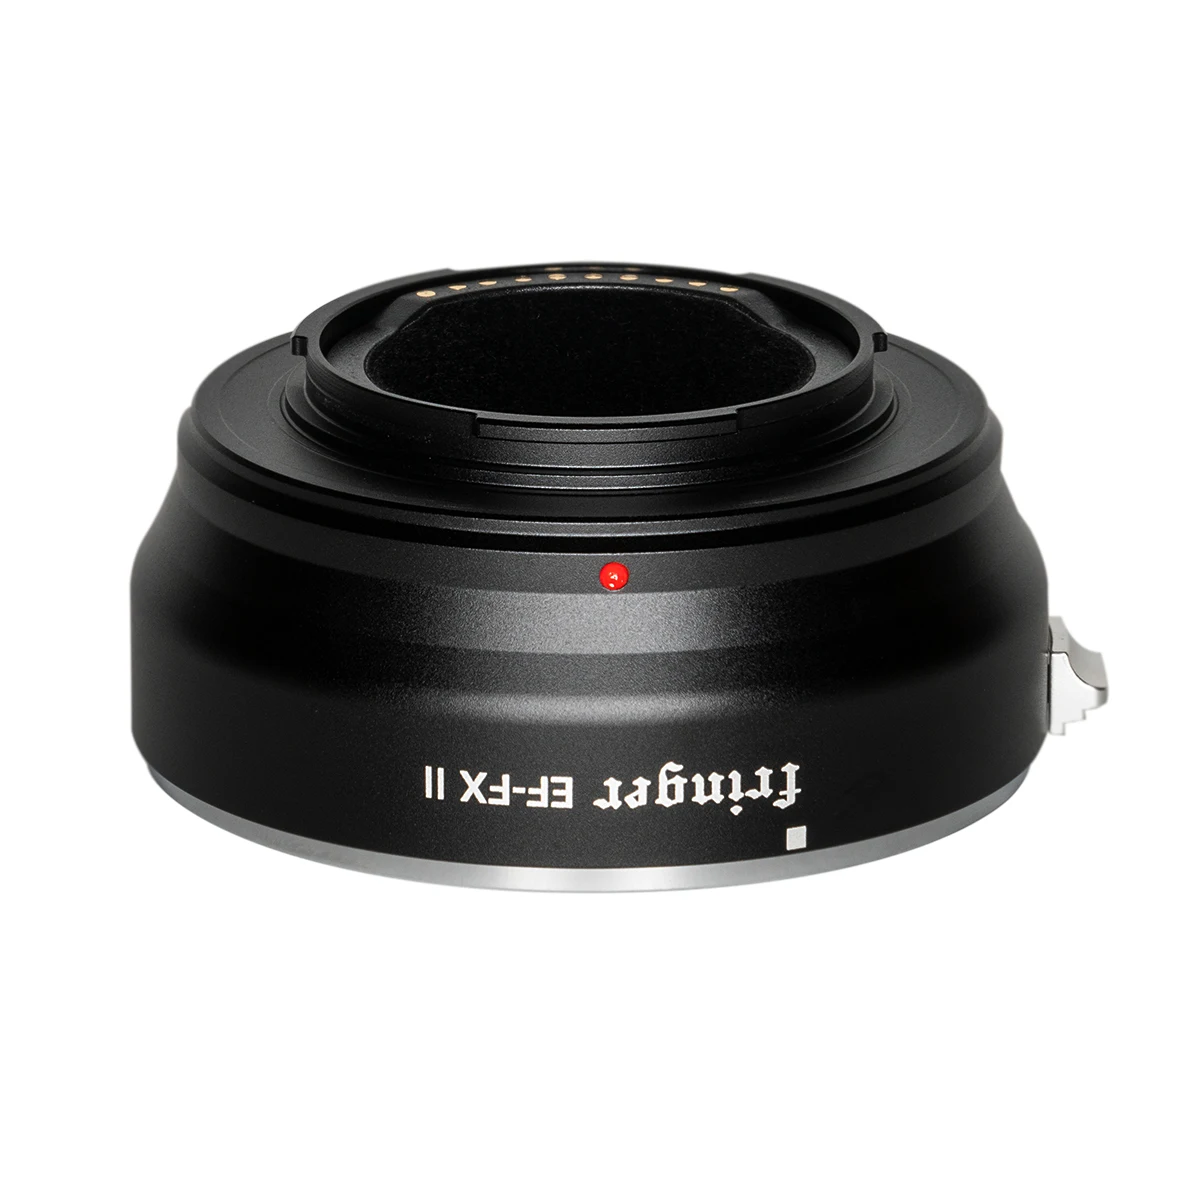 UK Fringer EF-FX II AF Lens Adapter for Canon Sigma Len to Fuji X Mount XT3 XT2 